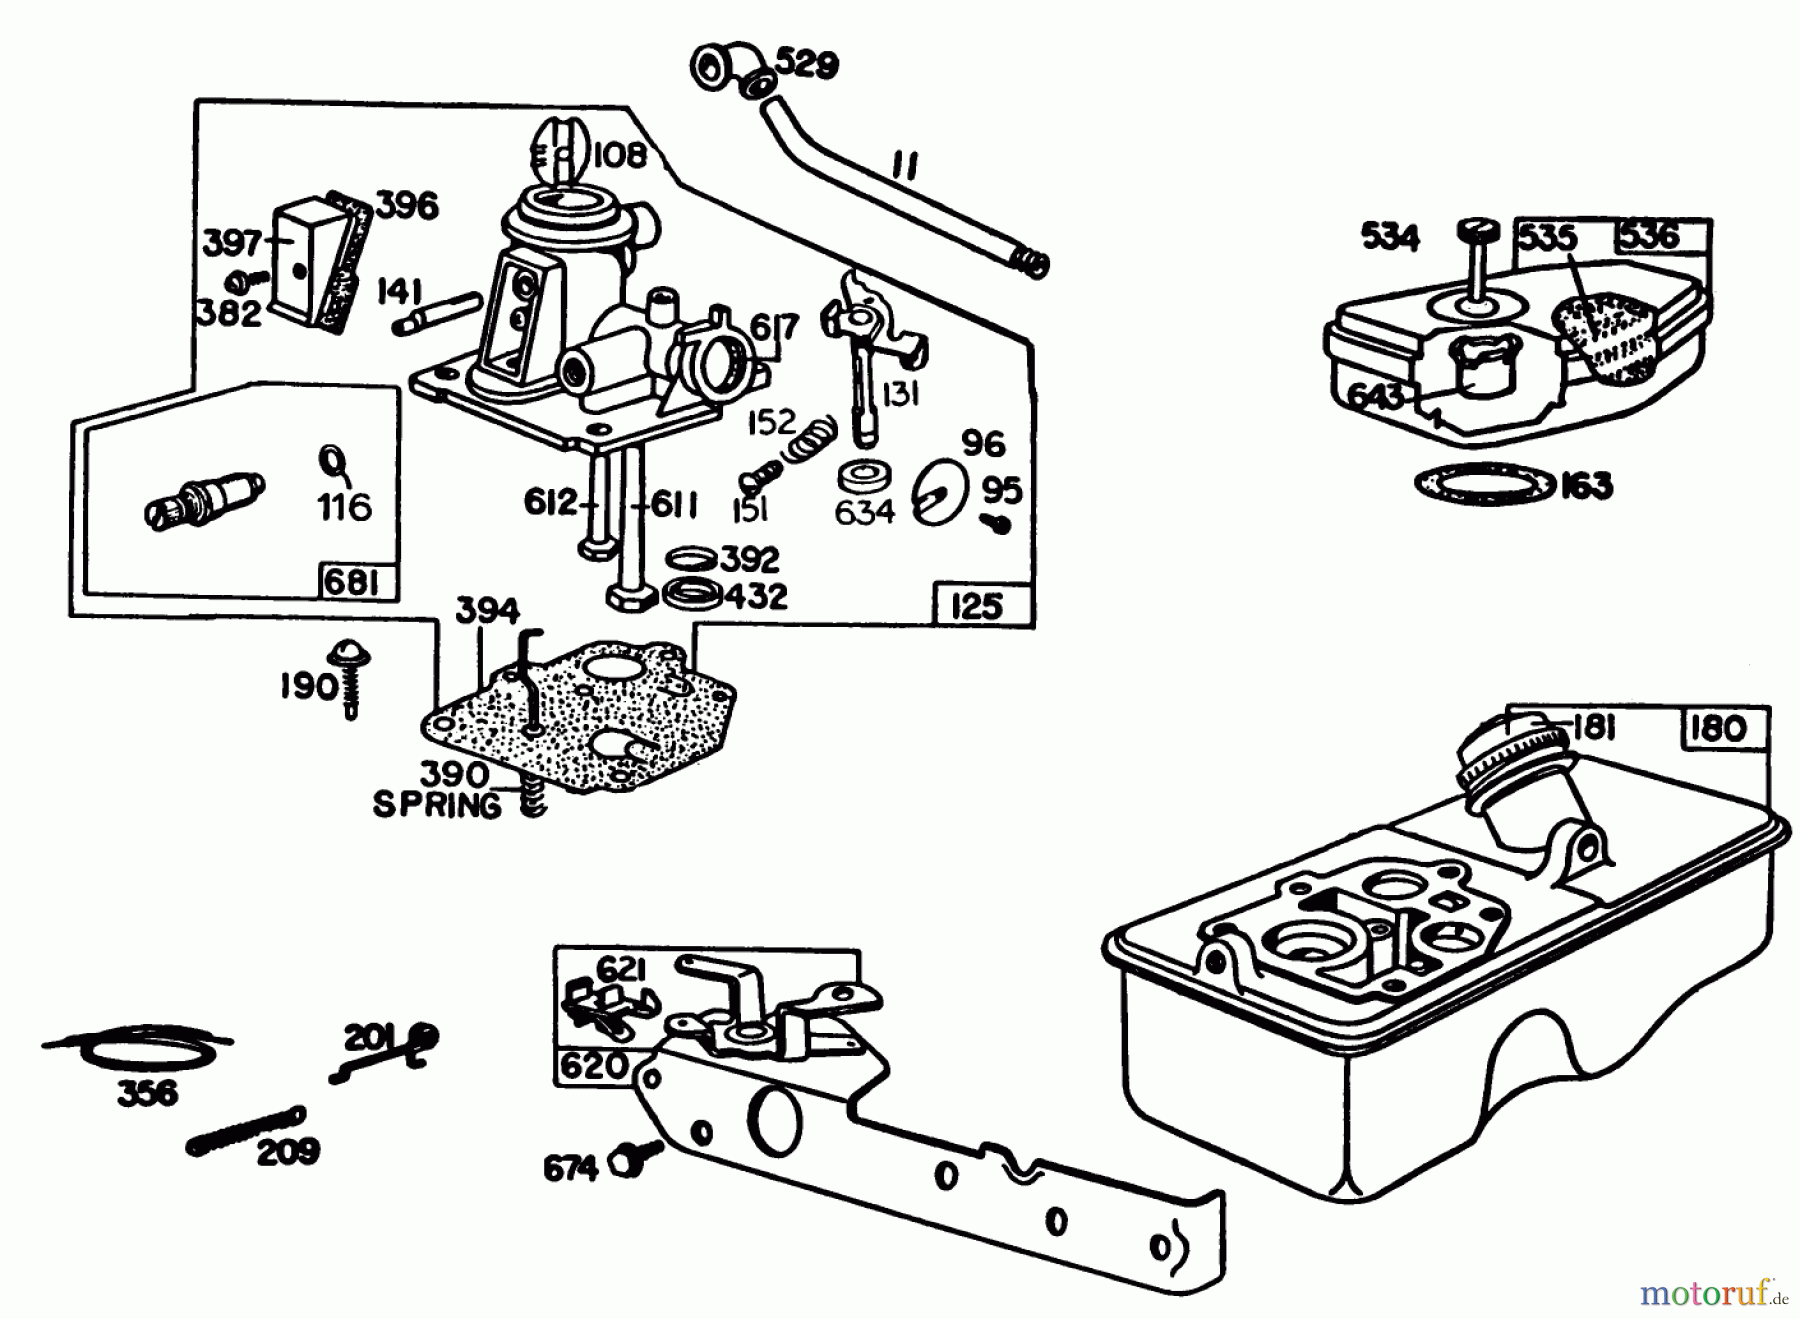  Toro Neu Mowers, Walk-Behind Seite 1 16330 - Toro Lawnmower, 1985 (5000001-5999999) ENGINE BRIGGS & STRATTON MODEL 92908-5205-01 #2